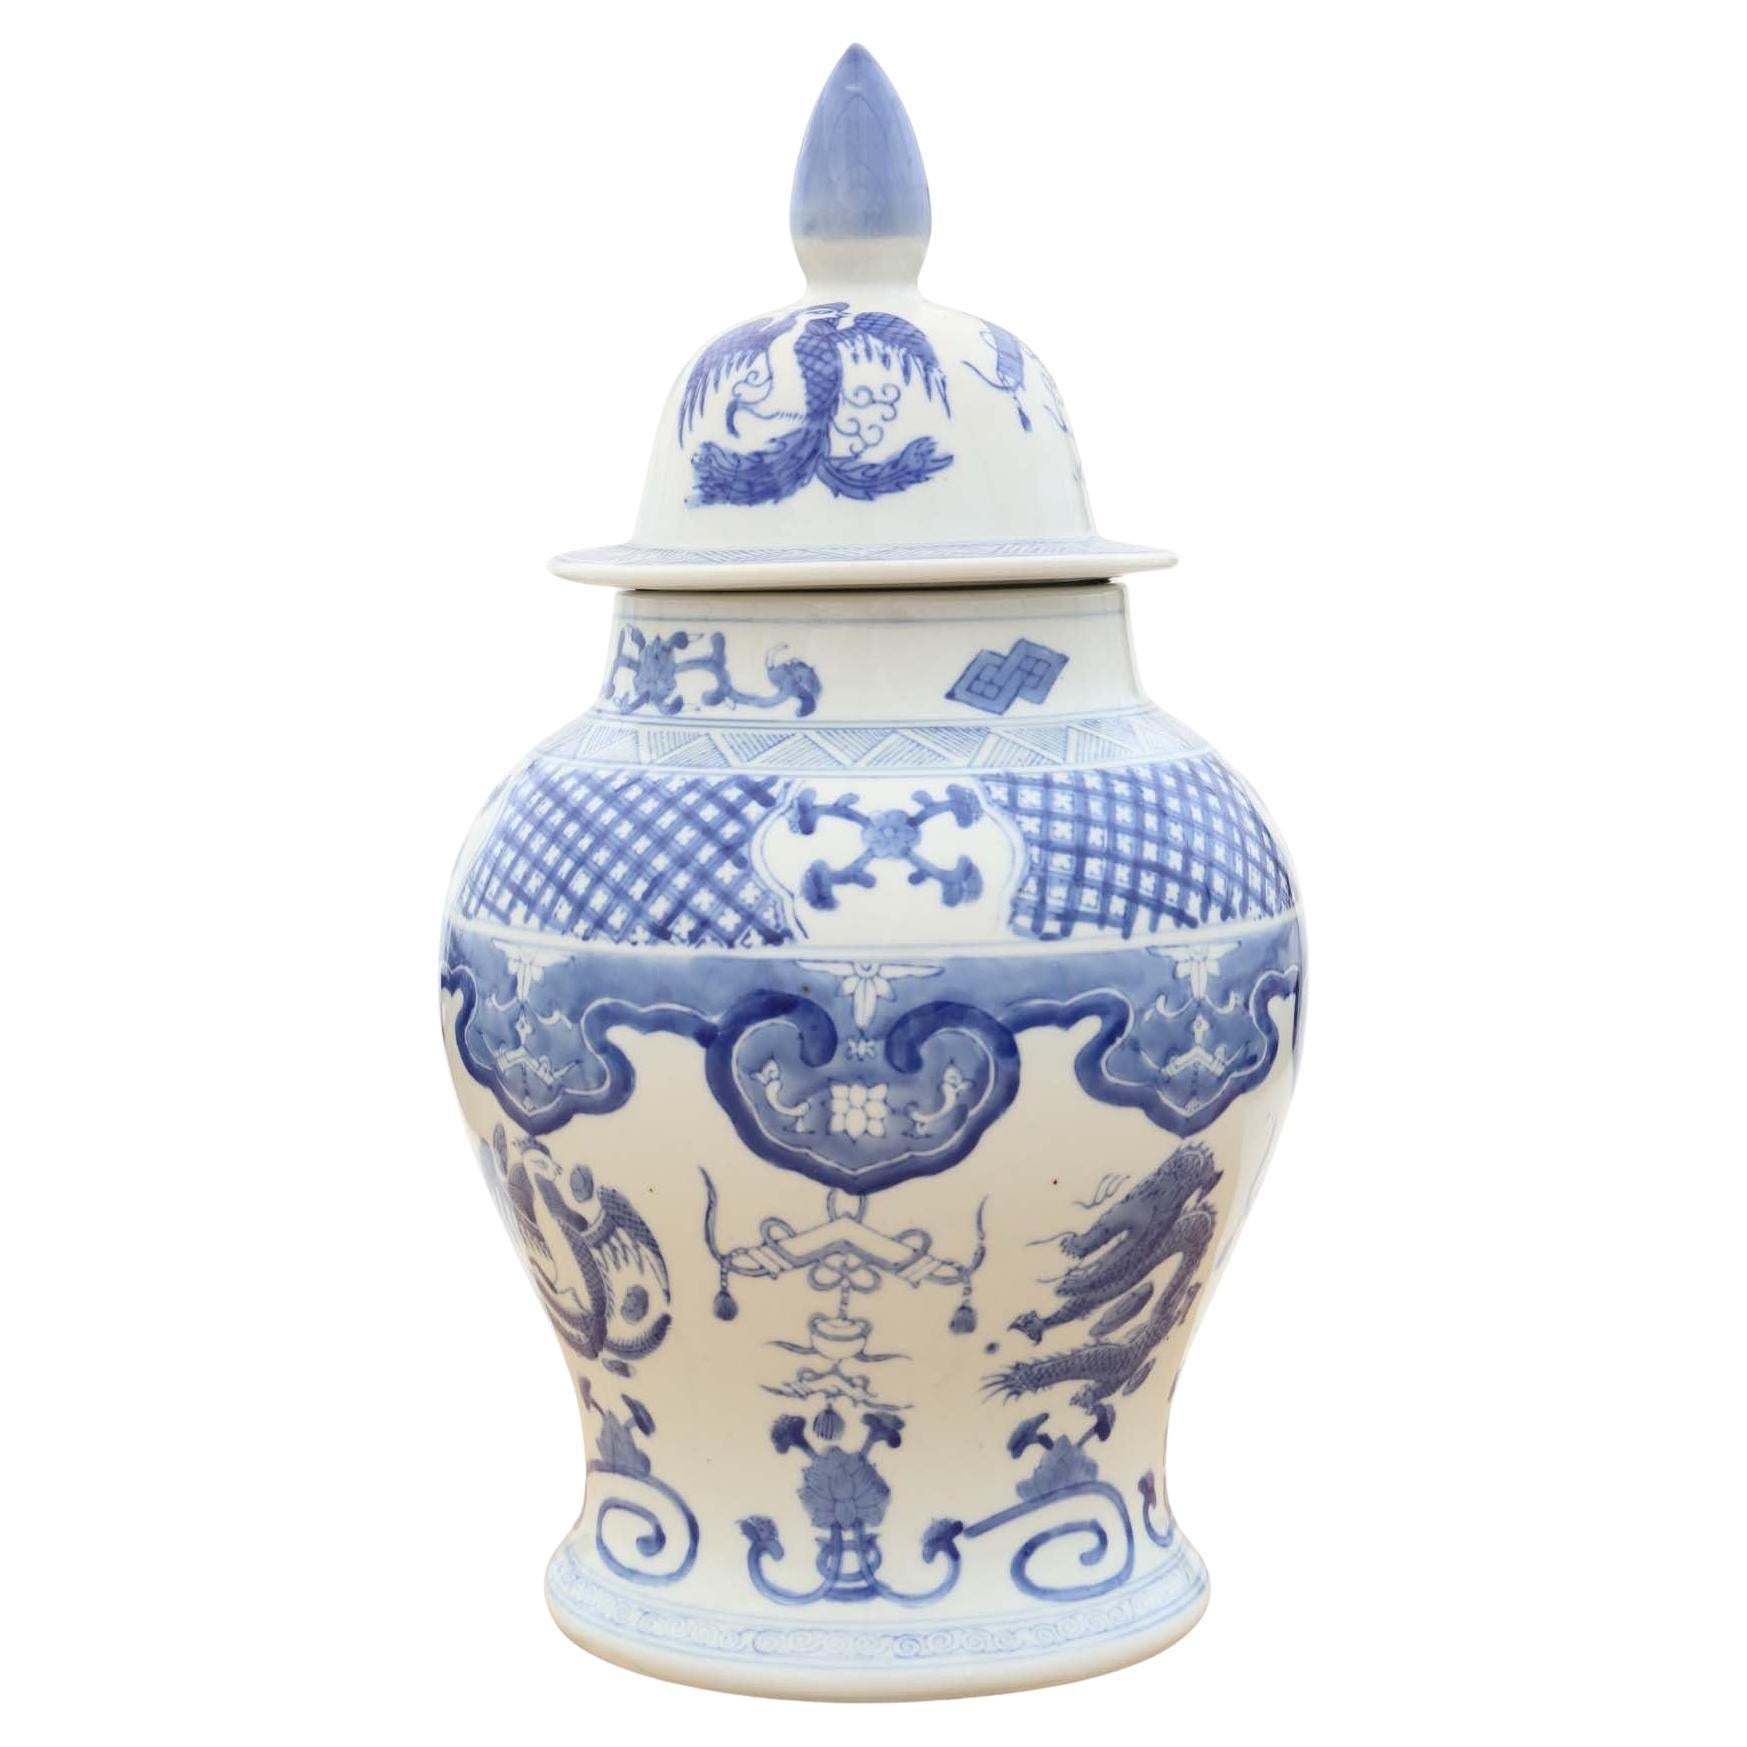 Antico vaso orientale cinese in ceramica blu e bianca con coperchio